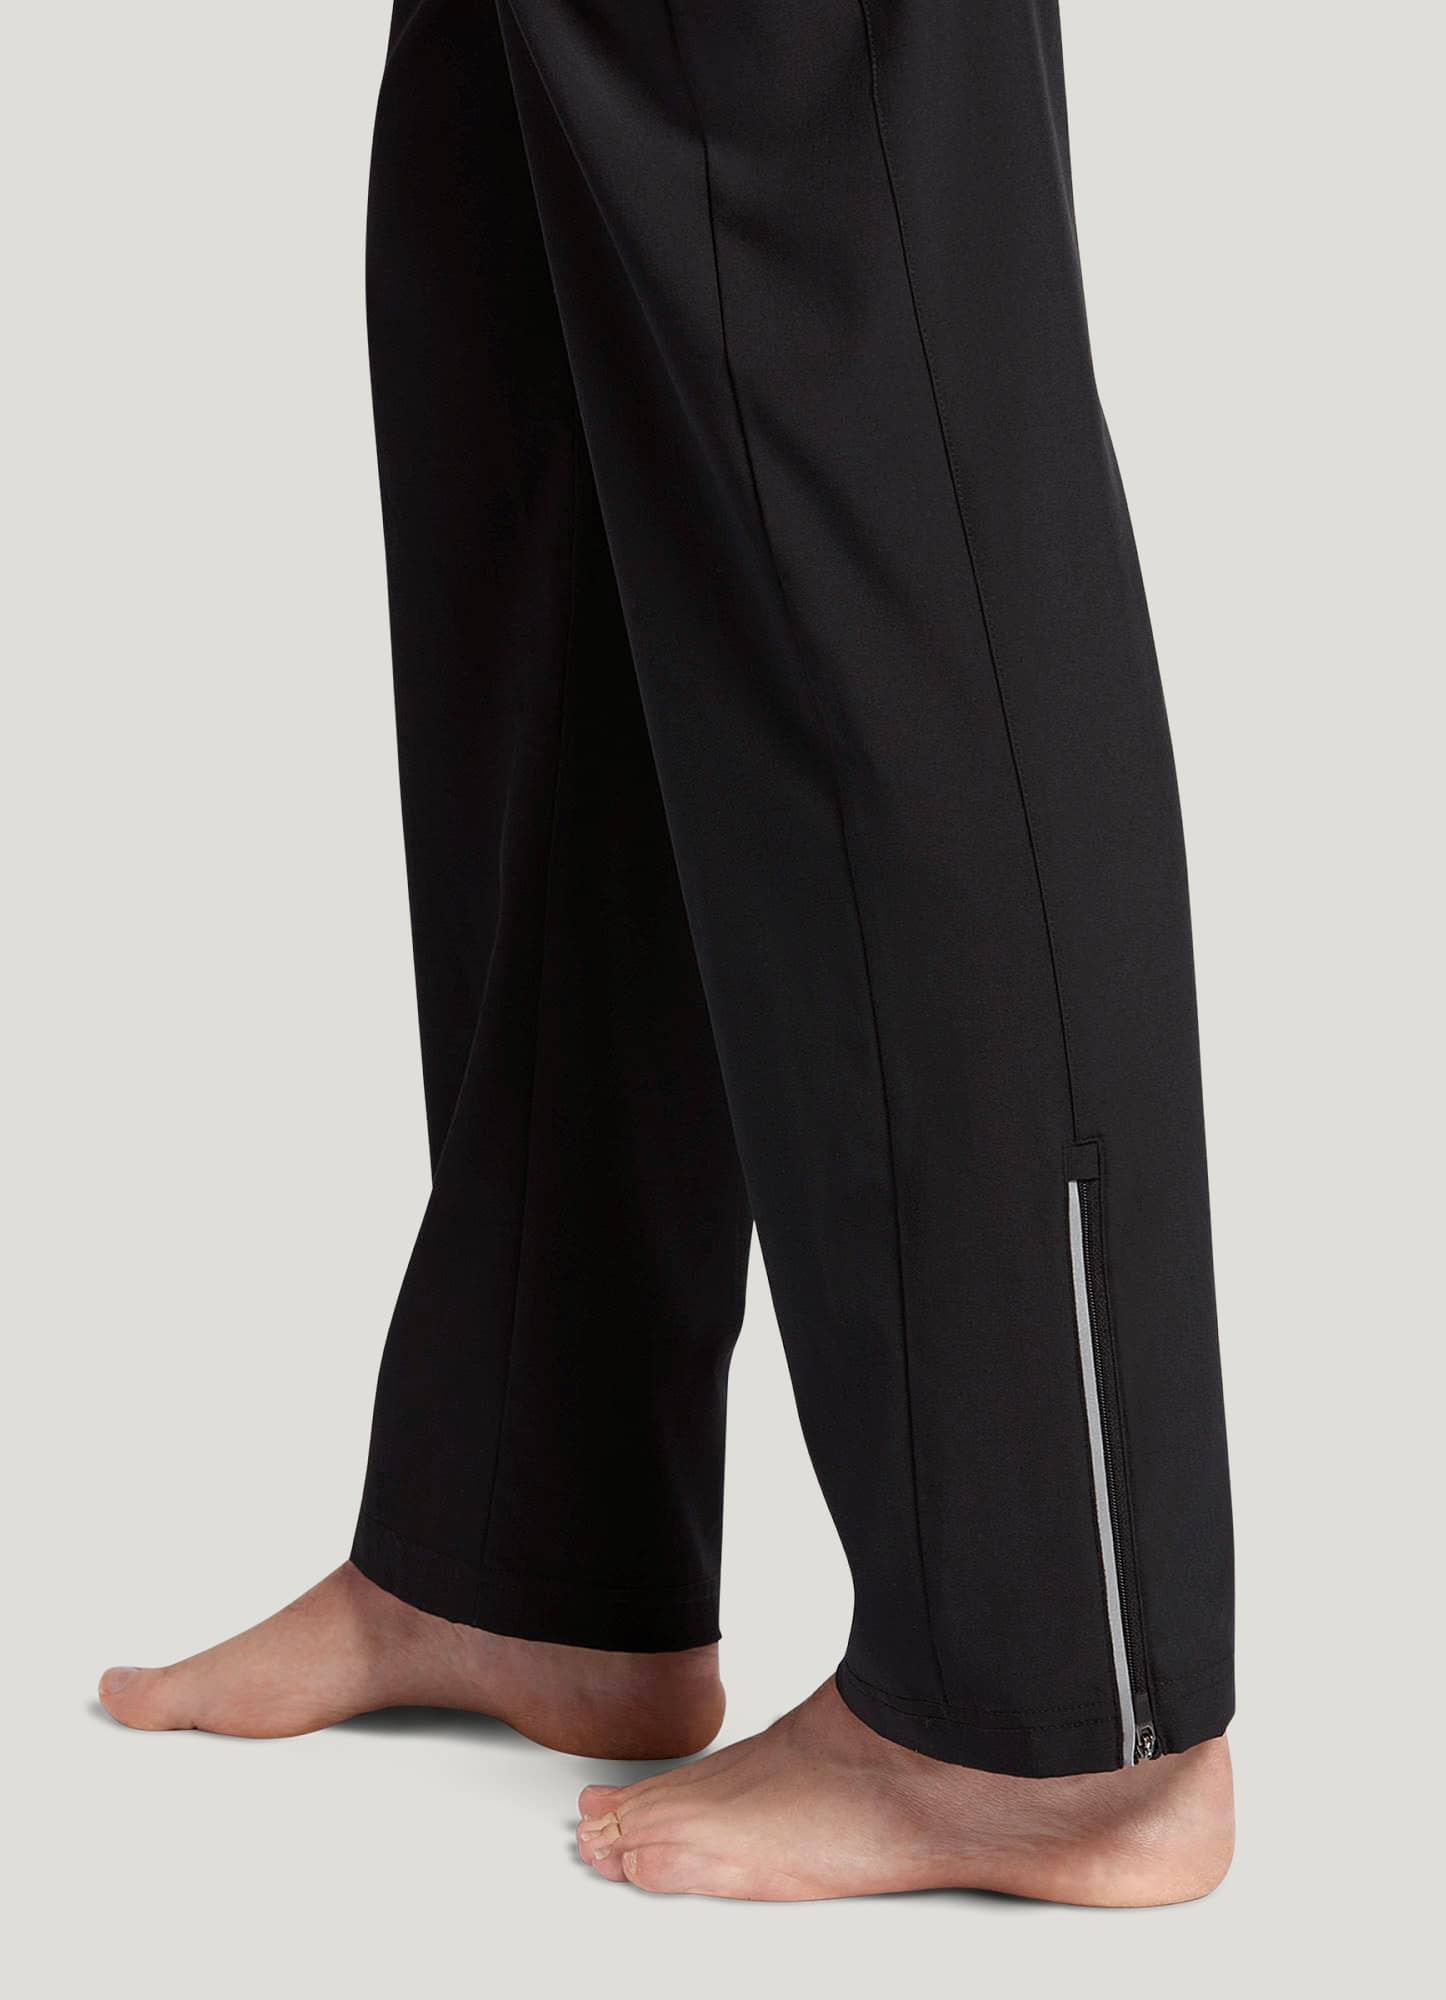 Jogging suit trousers by STEFANO RICCI | Shop Online